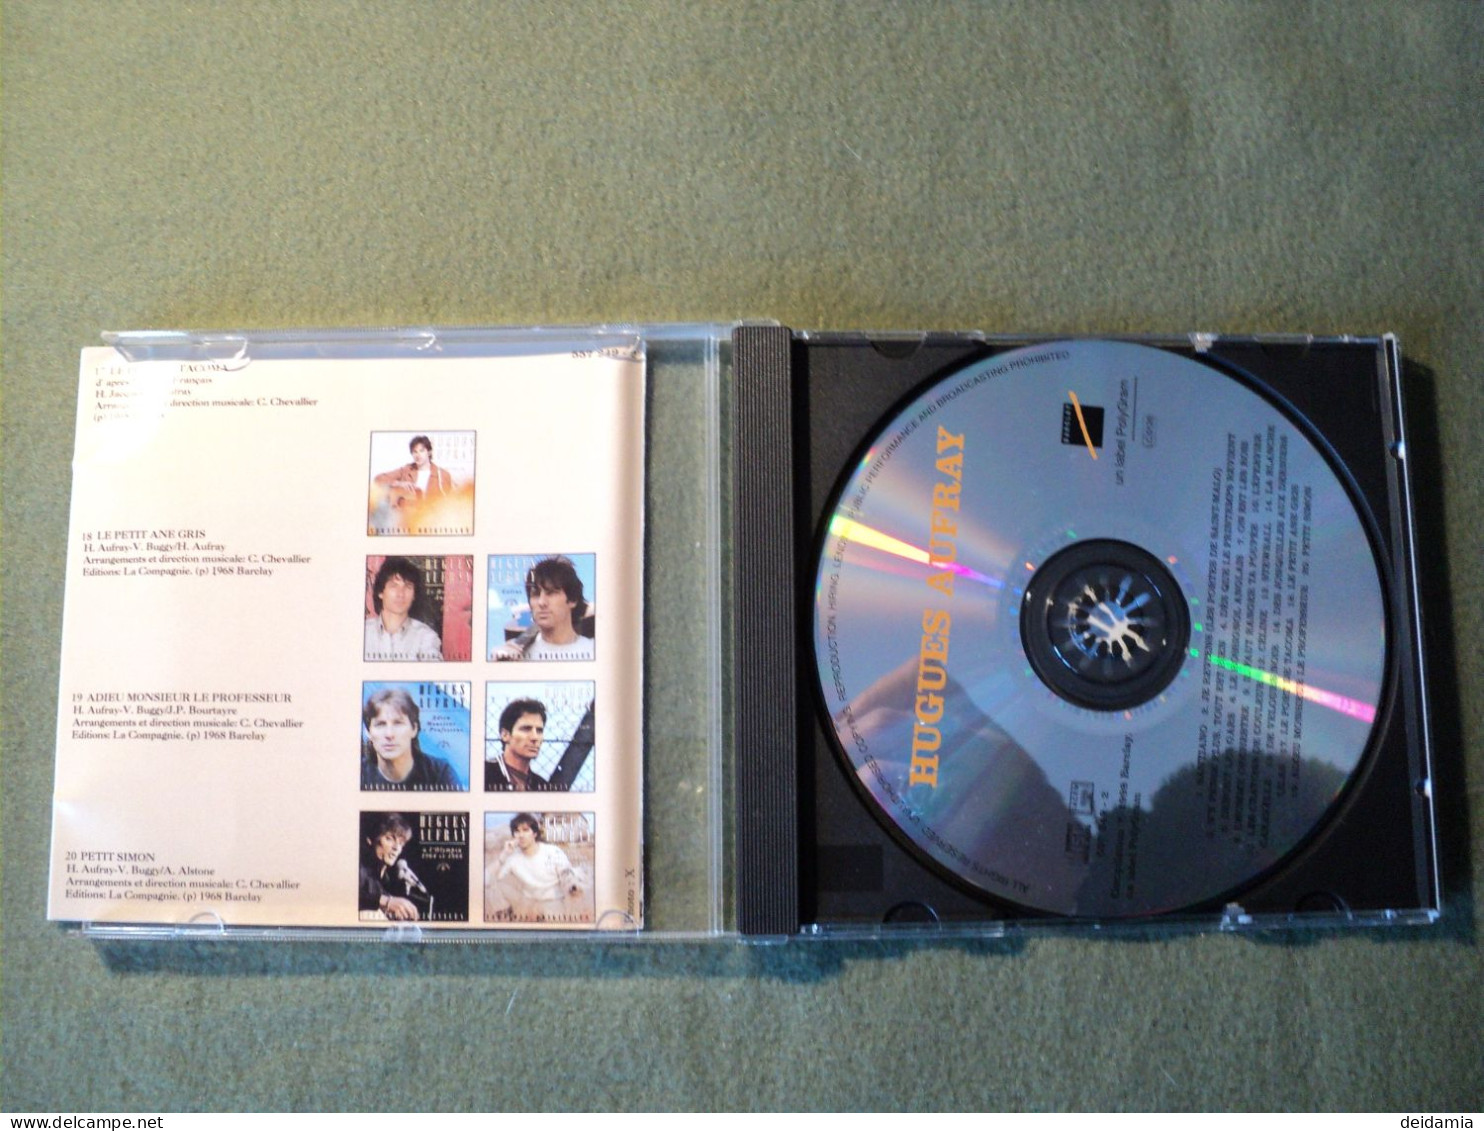 HUGUES AUFRAY. CD 20 TITRES DE 1998. POLYGRAM 557 249 2 SANTIANO / JE REVIENS / N Y PENSE PLUS TOUT EST BIEN / DES QUE L - Other - French Music